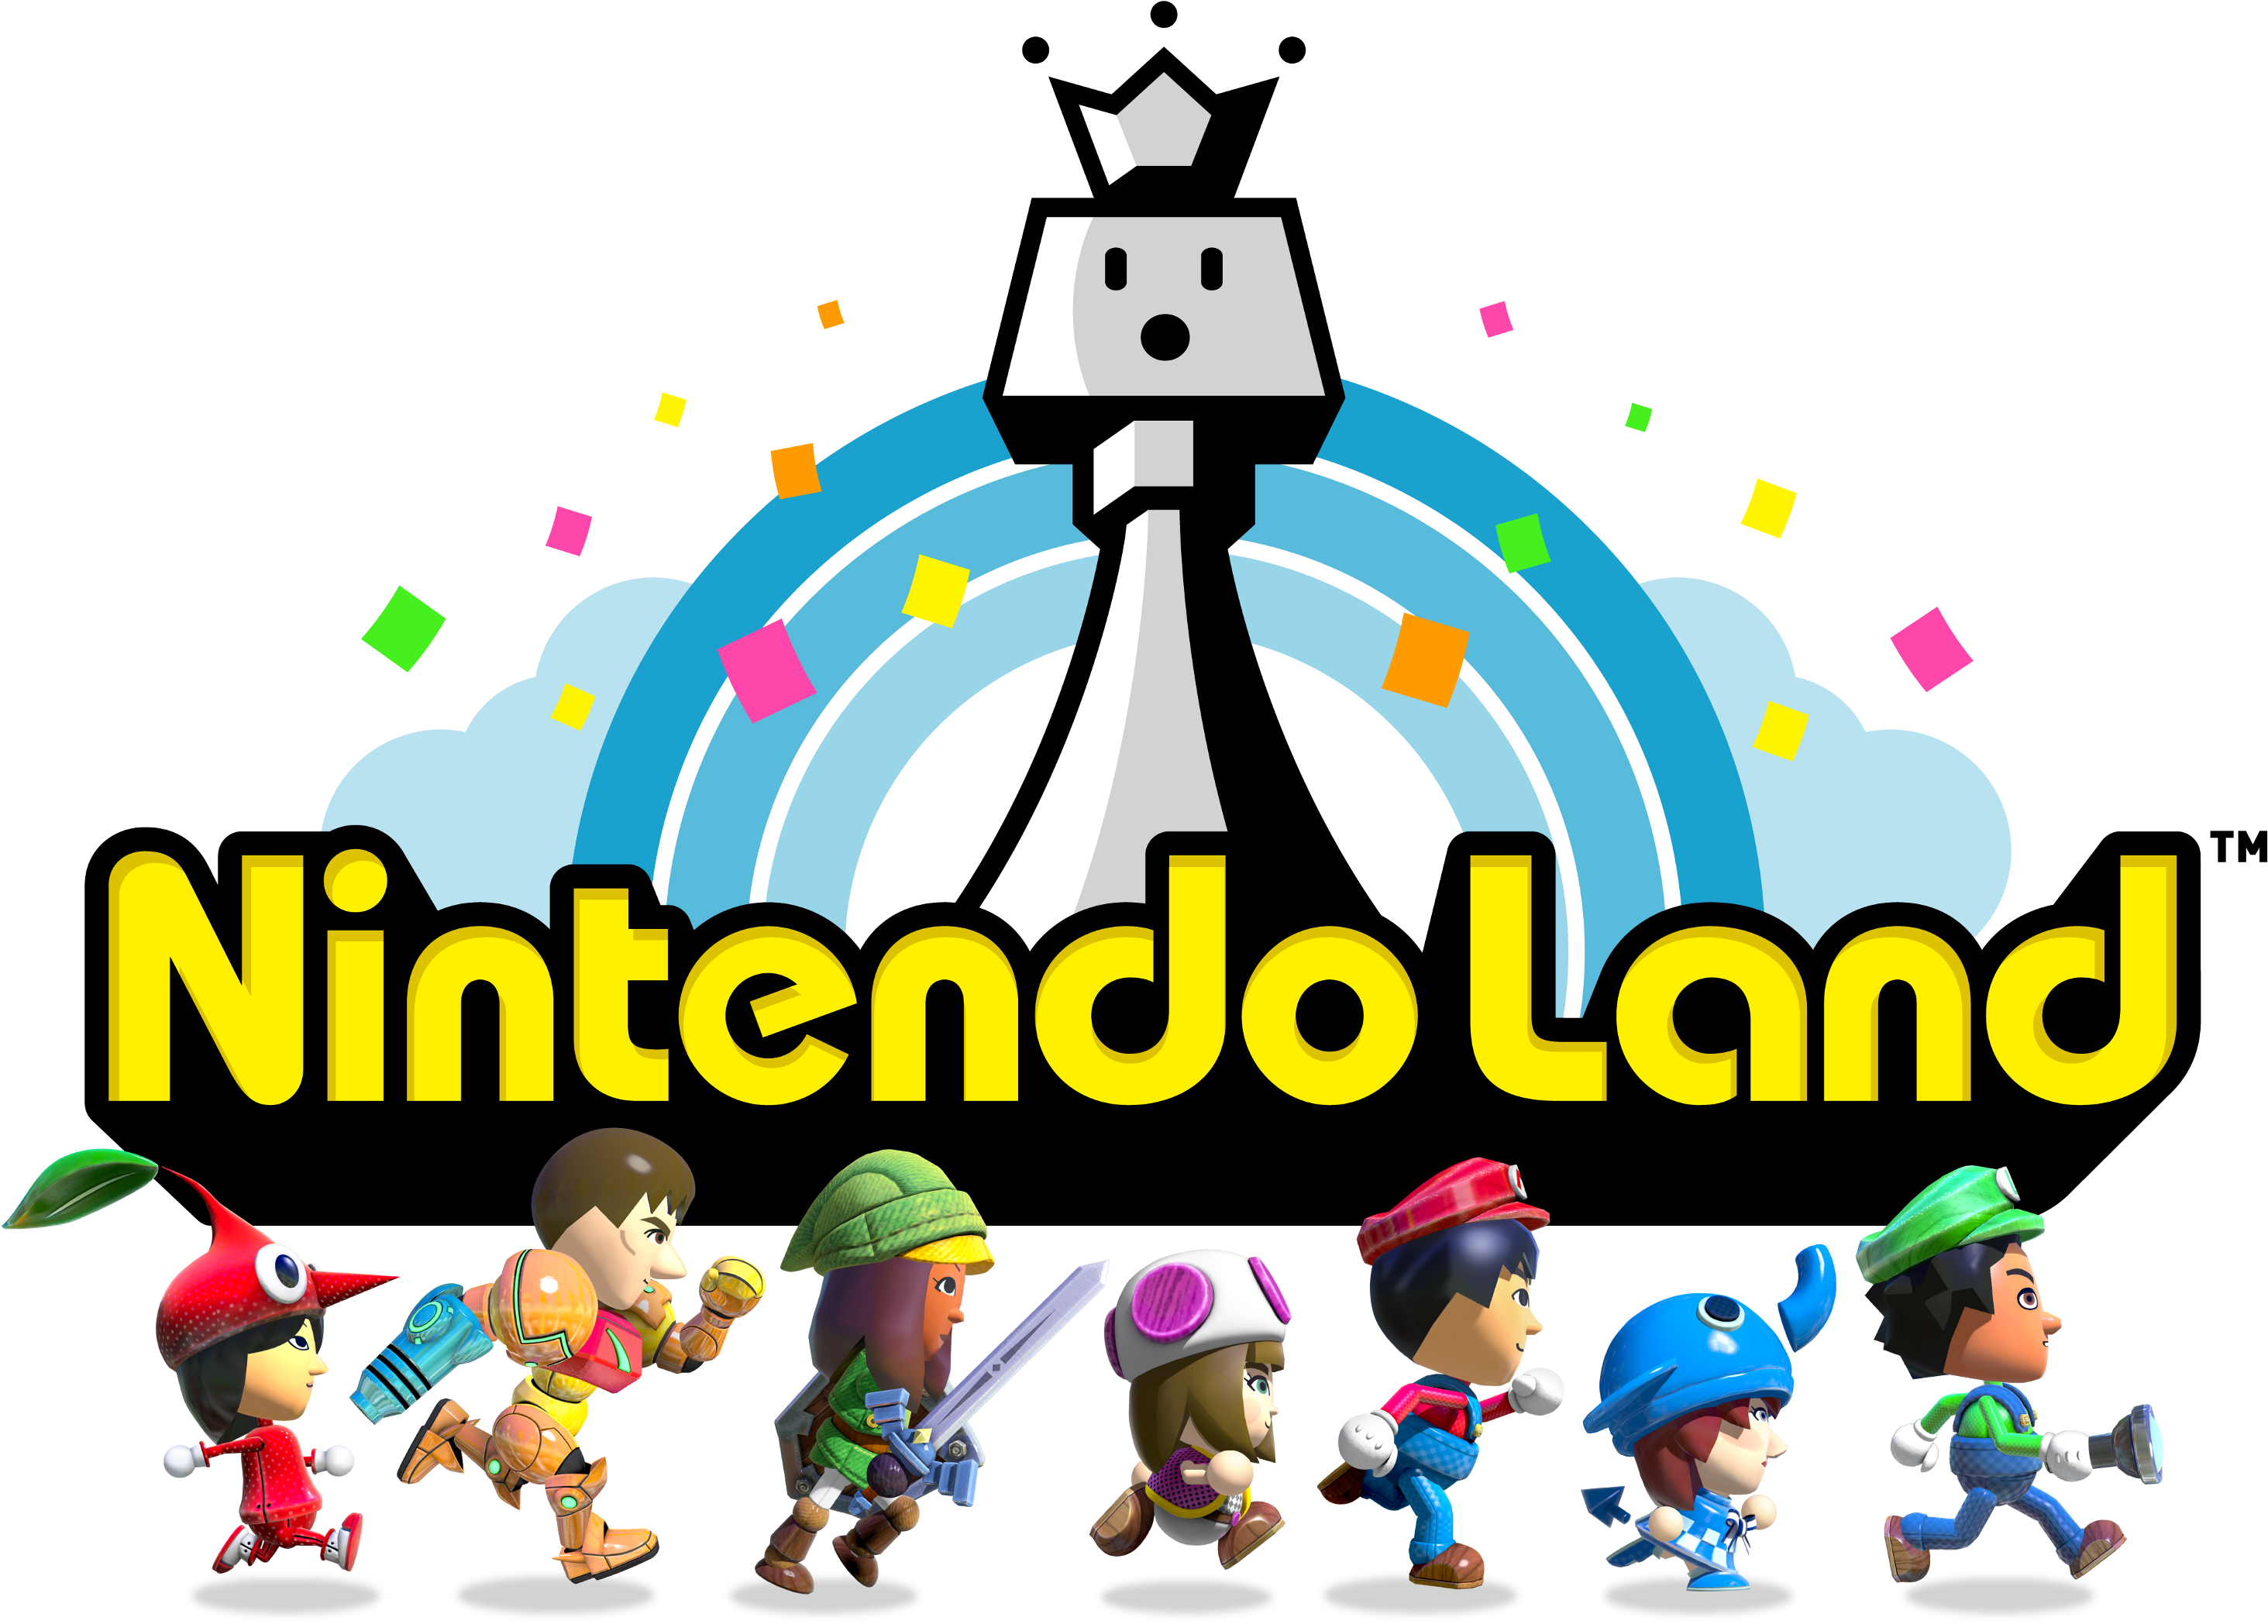 Nintendo land. Nintendo Land [Wii u]. Nintendo Land игра. Nintendo Land персонажи. Монита Нинтендо ленд.